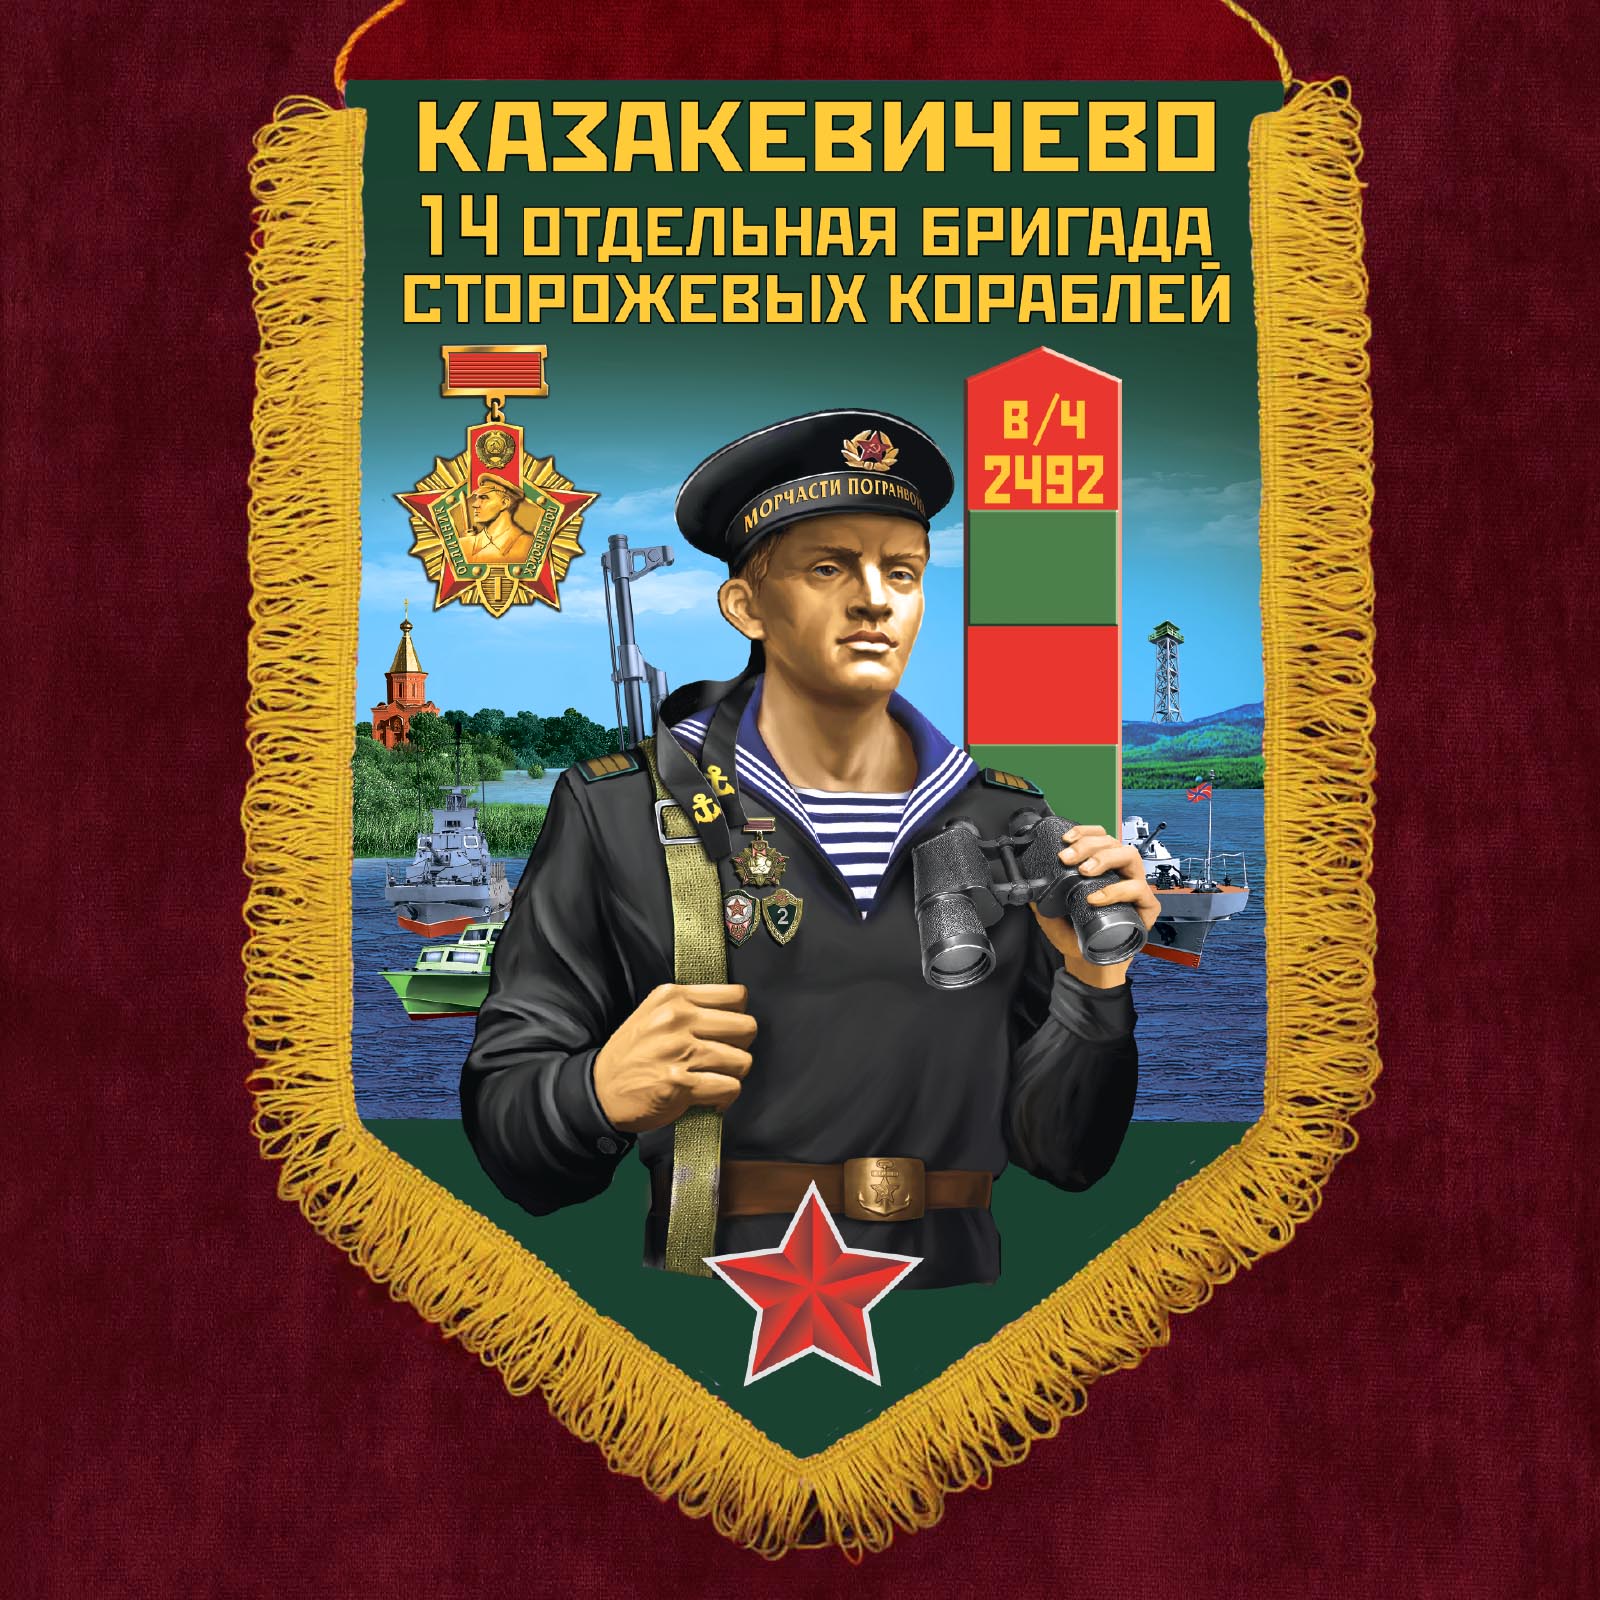 Купить памятный вымпел 14 отдельная бригада сторожевых кораблей Казакевичево